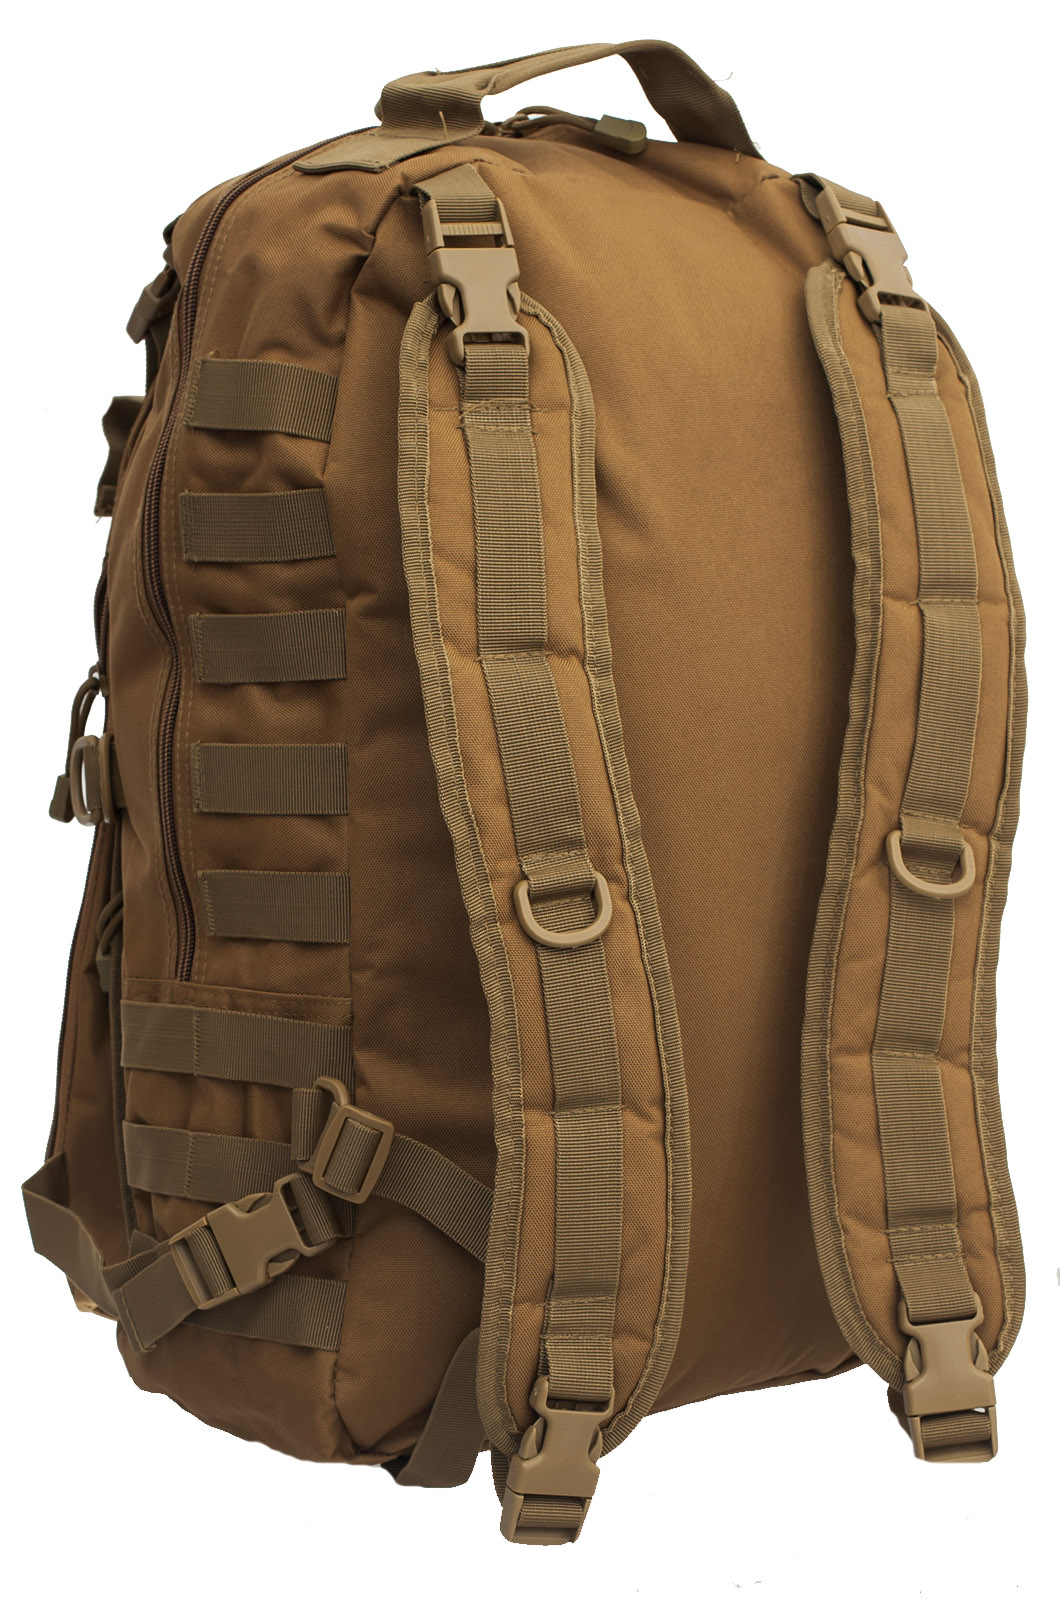 Купить рейдовый тактический рюкзак с нашивкой ФСО оптом или в розницу